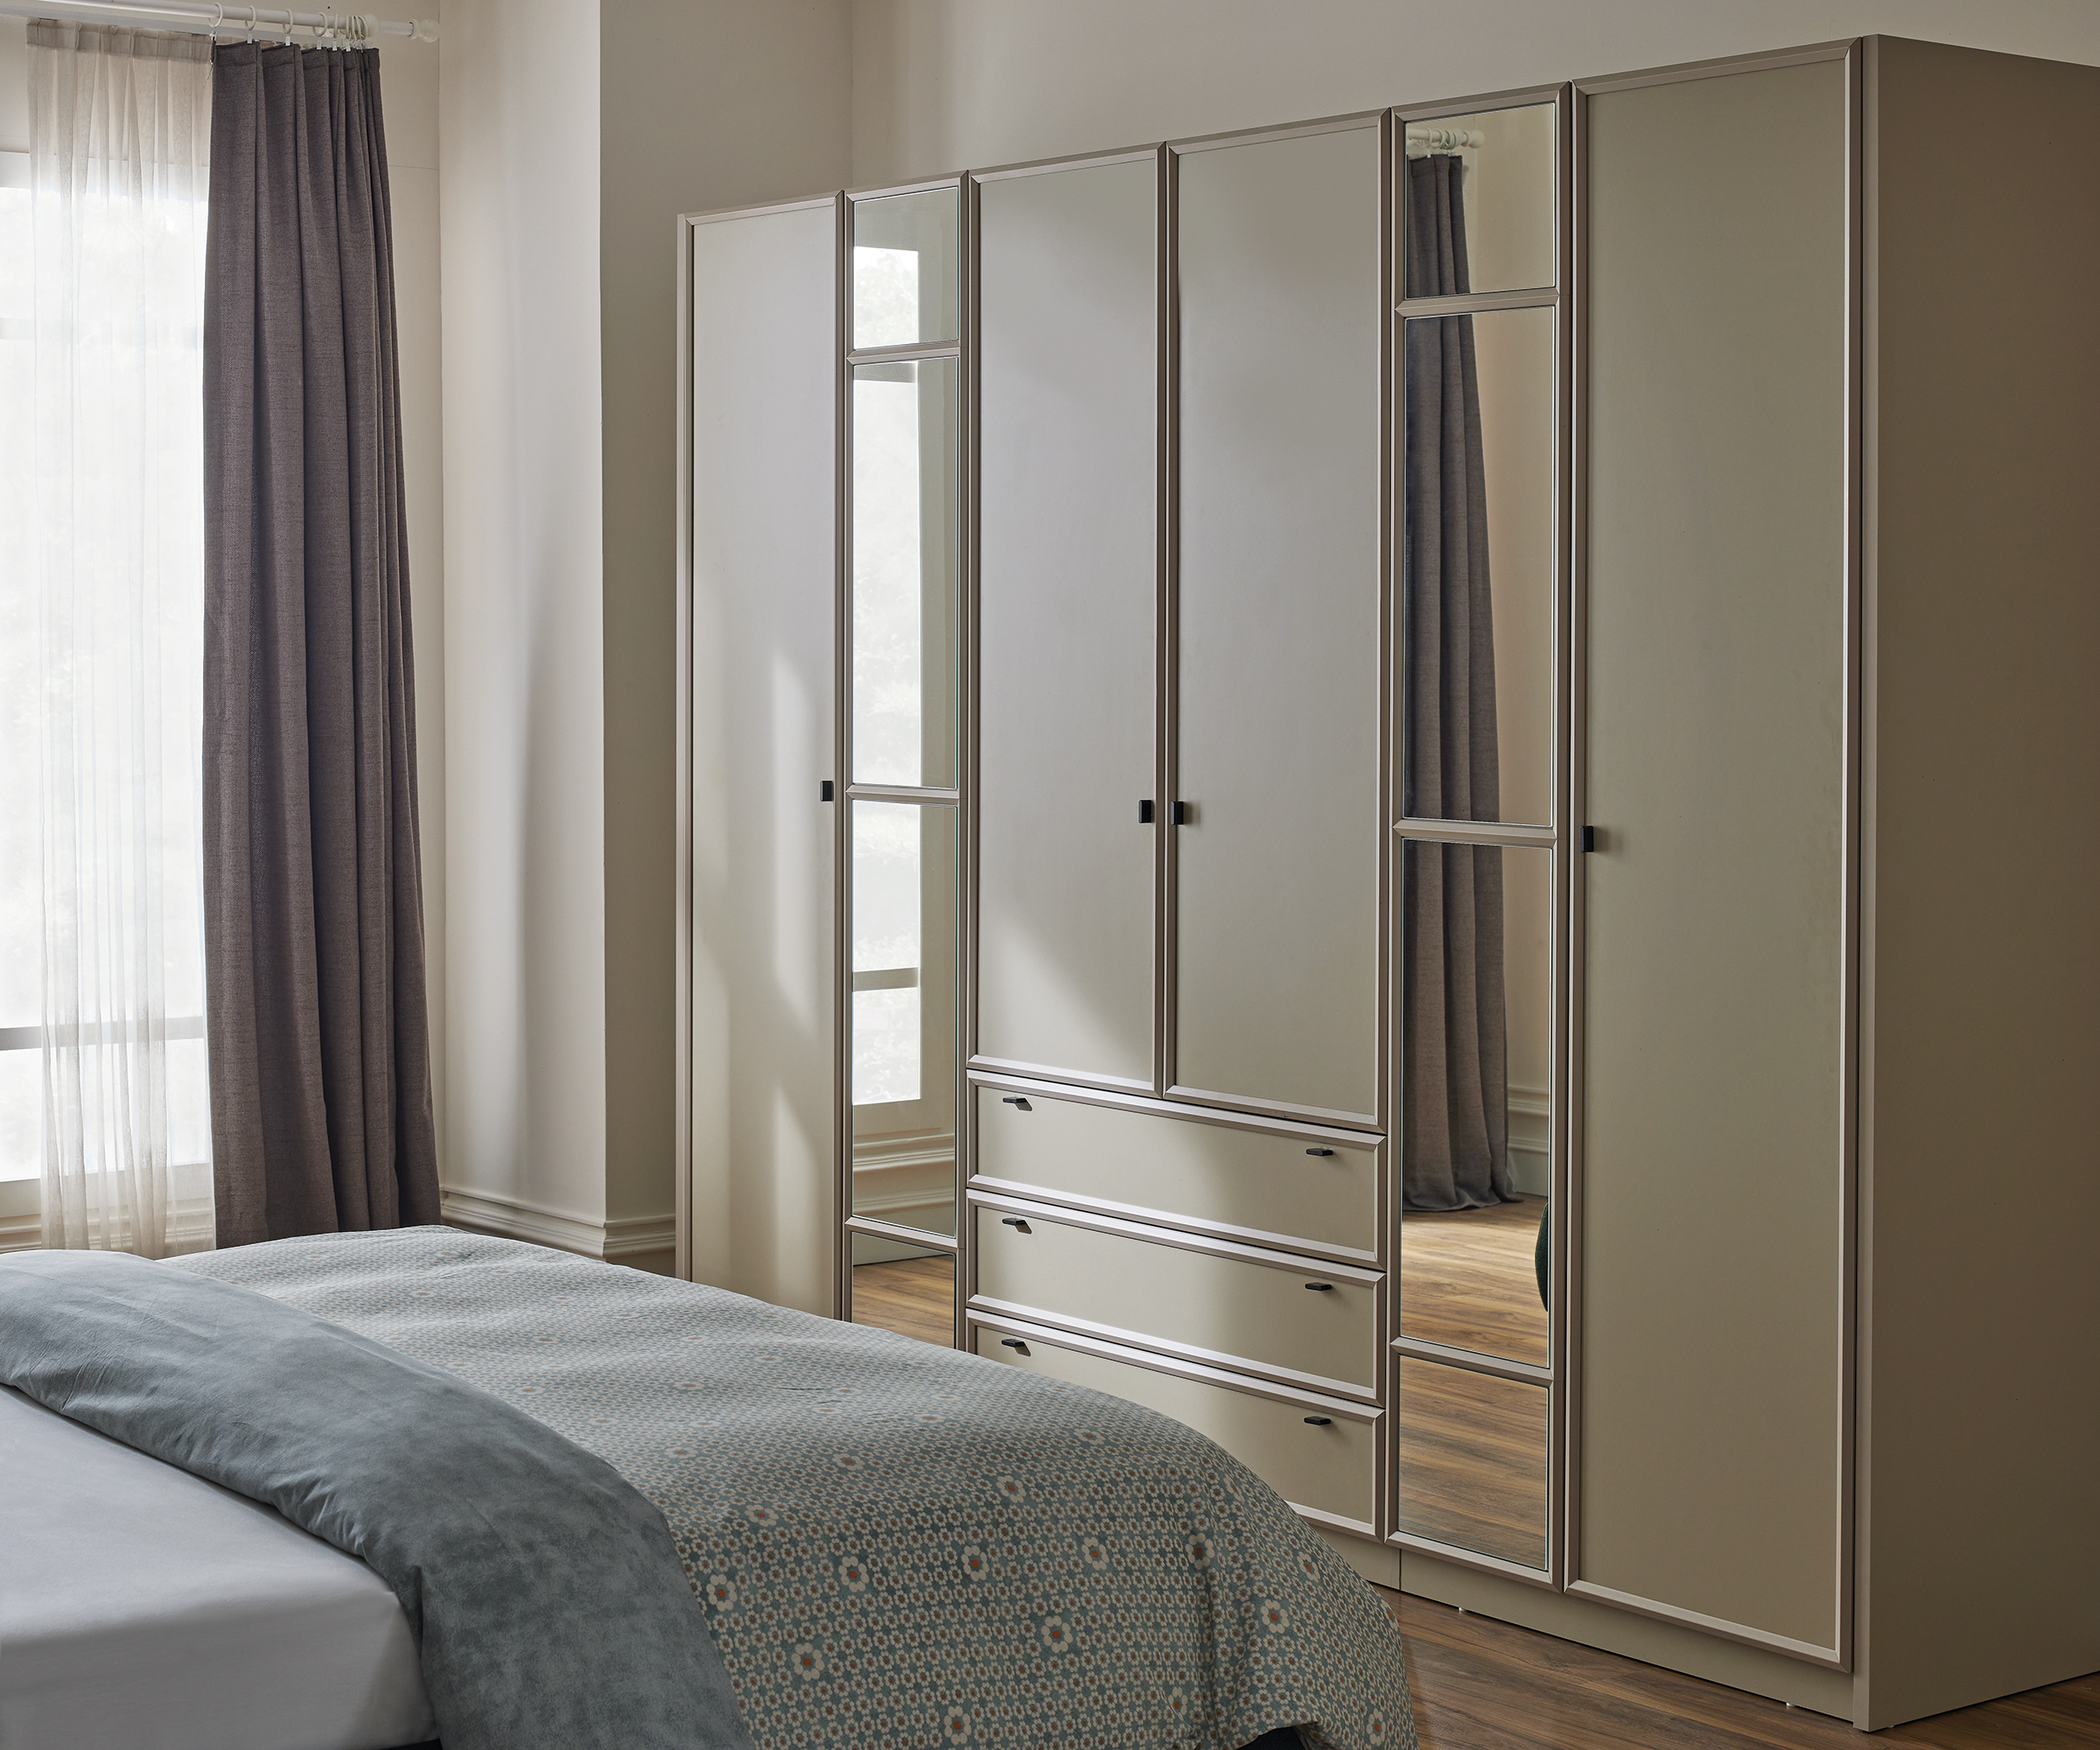 Divanev’den yatak odalarınıza düzen ve estetik katacak dekorasyon önerileri